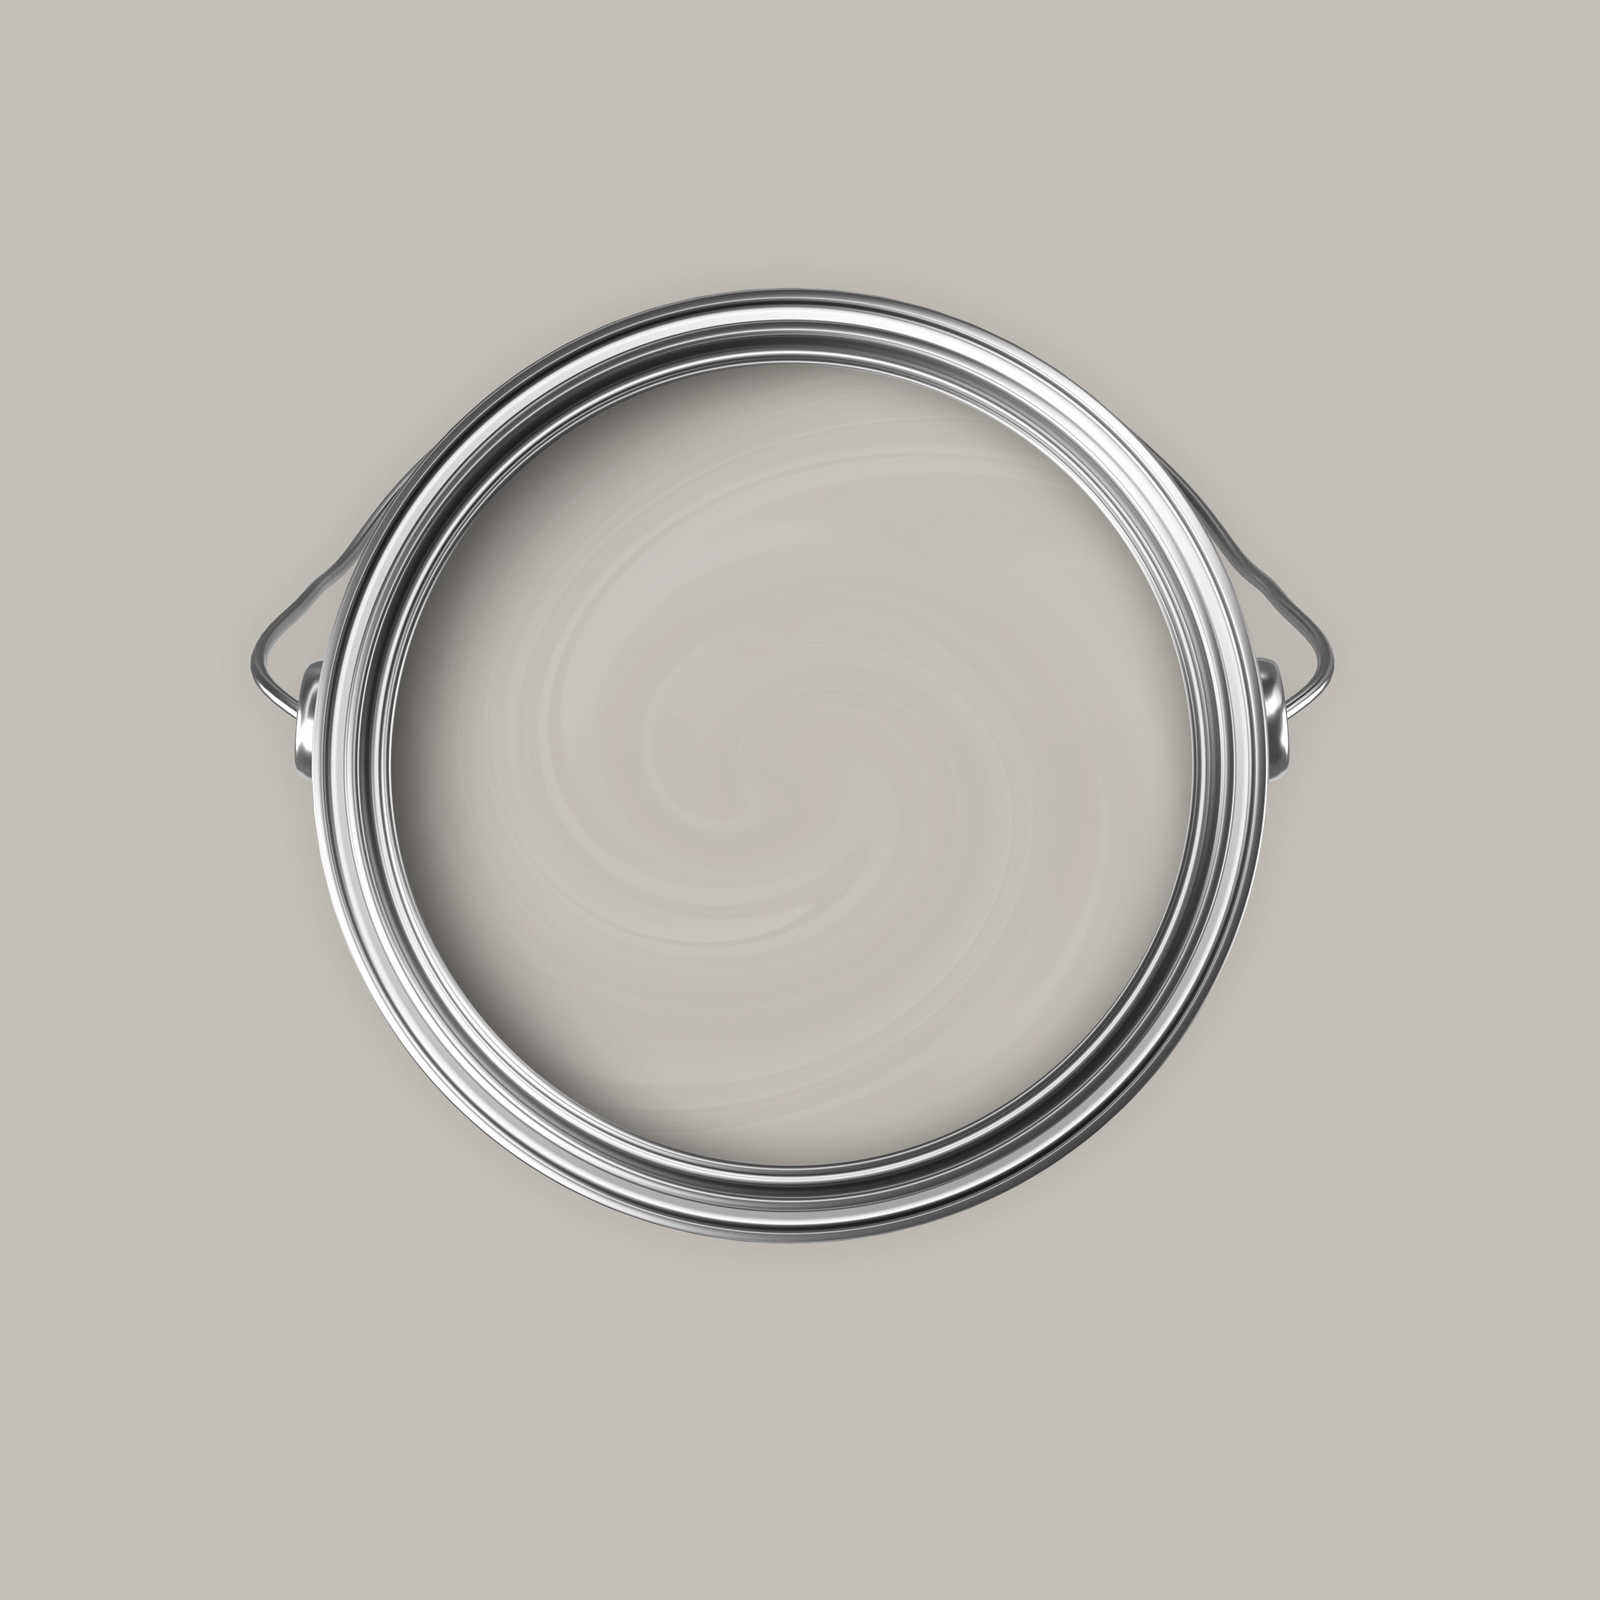             Peinture murale Premium gris soie doux »Creamy Grey« NW111 – 5 litres
        